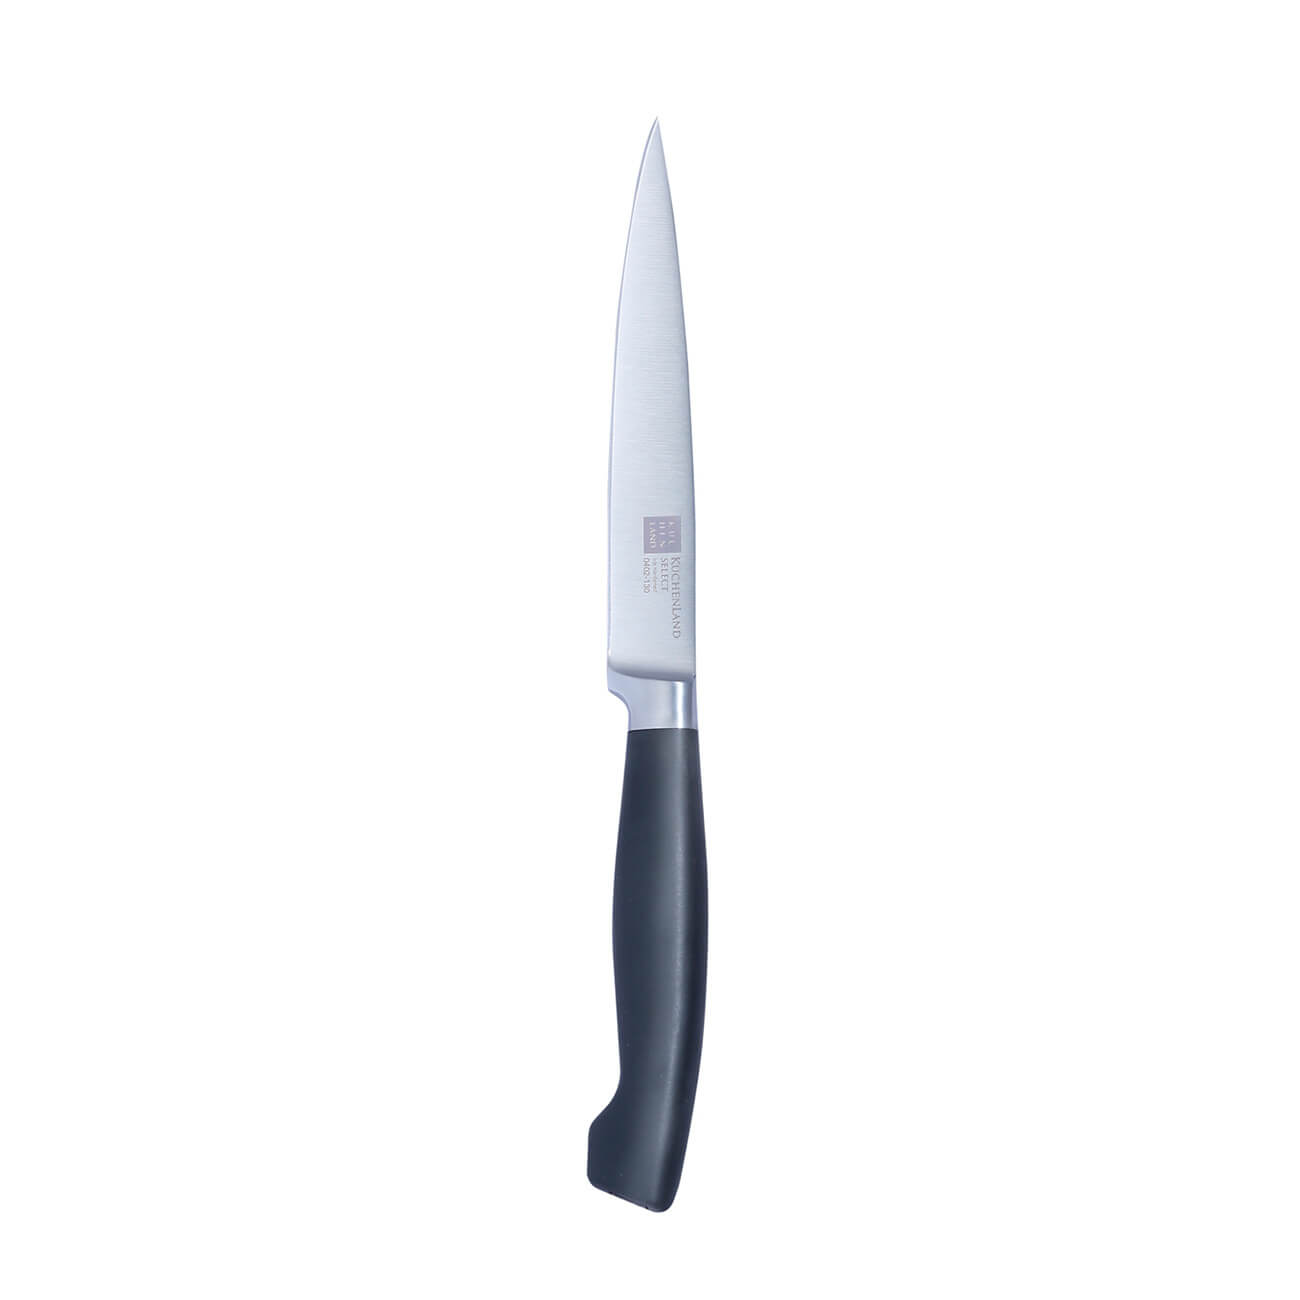 Kuchenland Нож для нарезки, 13 см, сталь/пластик, Select инструменты для моделирования и придания формы набор 3 шт металл пластик 16 см 17х7 5 см